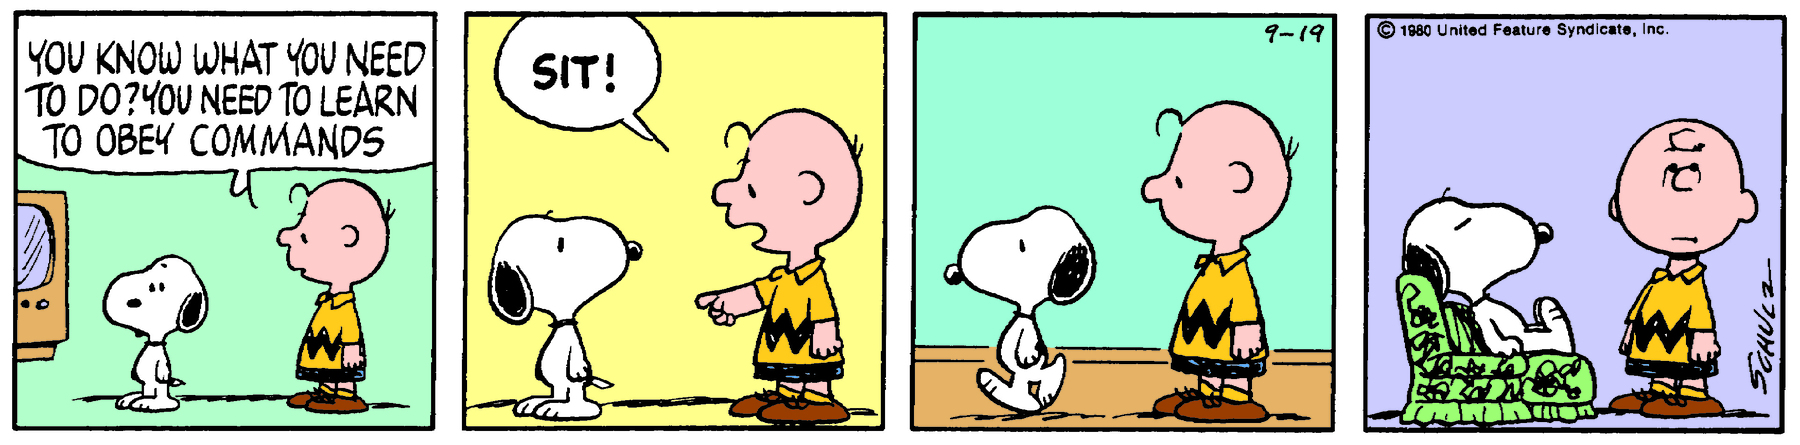 Tirinha. Composta por quatro quadros. Apresenta como personagens: Charlie Brown, menino com um fio de cabelo preto à frente, de camiseta em amarelo e listra preta em zig zag, com bermuda em preto e sapatos marrons. Snoopy, cachorro beagle de tamanho médio, branco e com orelhas e focinho e preto. As cenas se passam em uma sala de estar onde vemos uma TV.Quadro um: Snoopy em pé, com o corpo para a esquerda, próximo de Charlie Brown, também com o corpo para a esquerda, que diz: YOU KNOW WHAT YOU NEED TO DO? YOU NEED TO LEARN TO OBEY COMMANDS. Quadro dois: Snoopy, coma cabeça para a direita, olhando para Charlie Brown. Este está com o braço esquerdo levantado e apontando para o chão e diz: SIT! Quadro três: Snoopy caminha para a esquerda, observado por Charlie Brown. Quadro quatro: Snoopy sentado sobre uma poltrona em verde e linhas em preto. Ele está de olhos fechados. À direita, Charlie Brown, olhando para frente com a boca reta e olhos virados para cima.